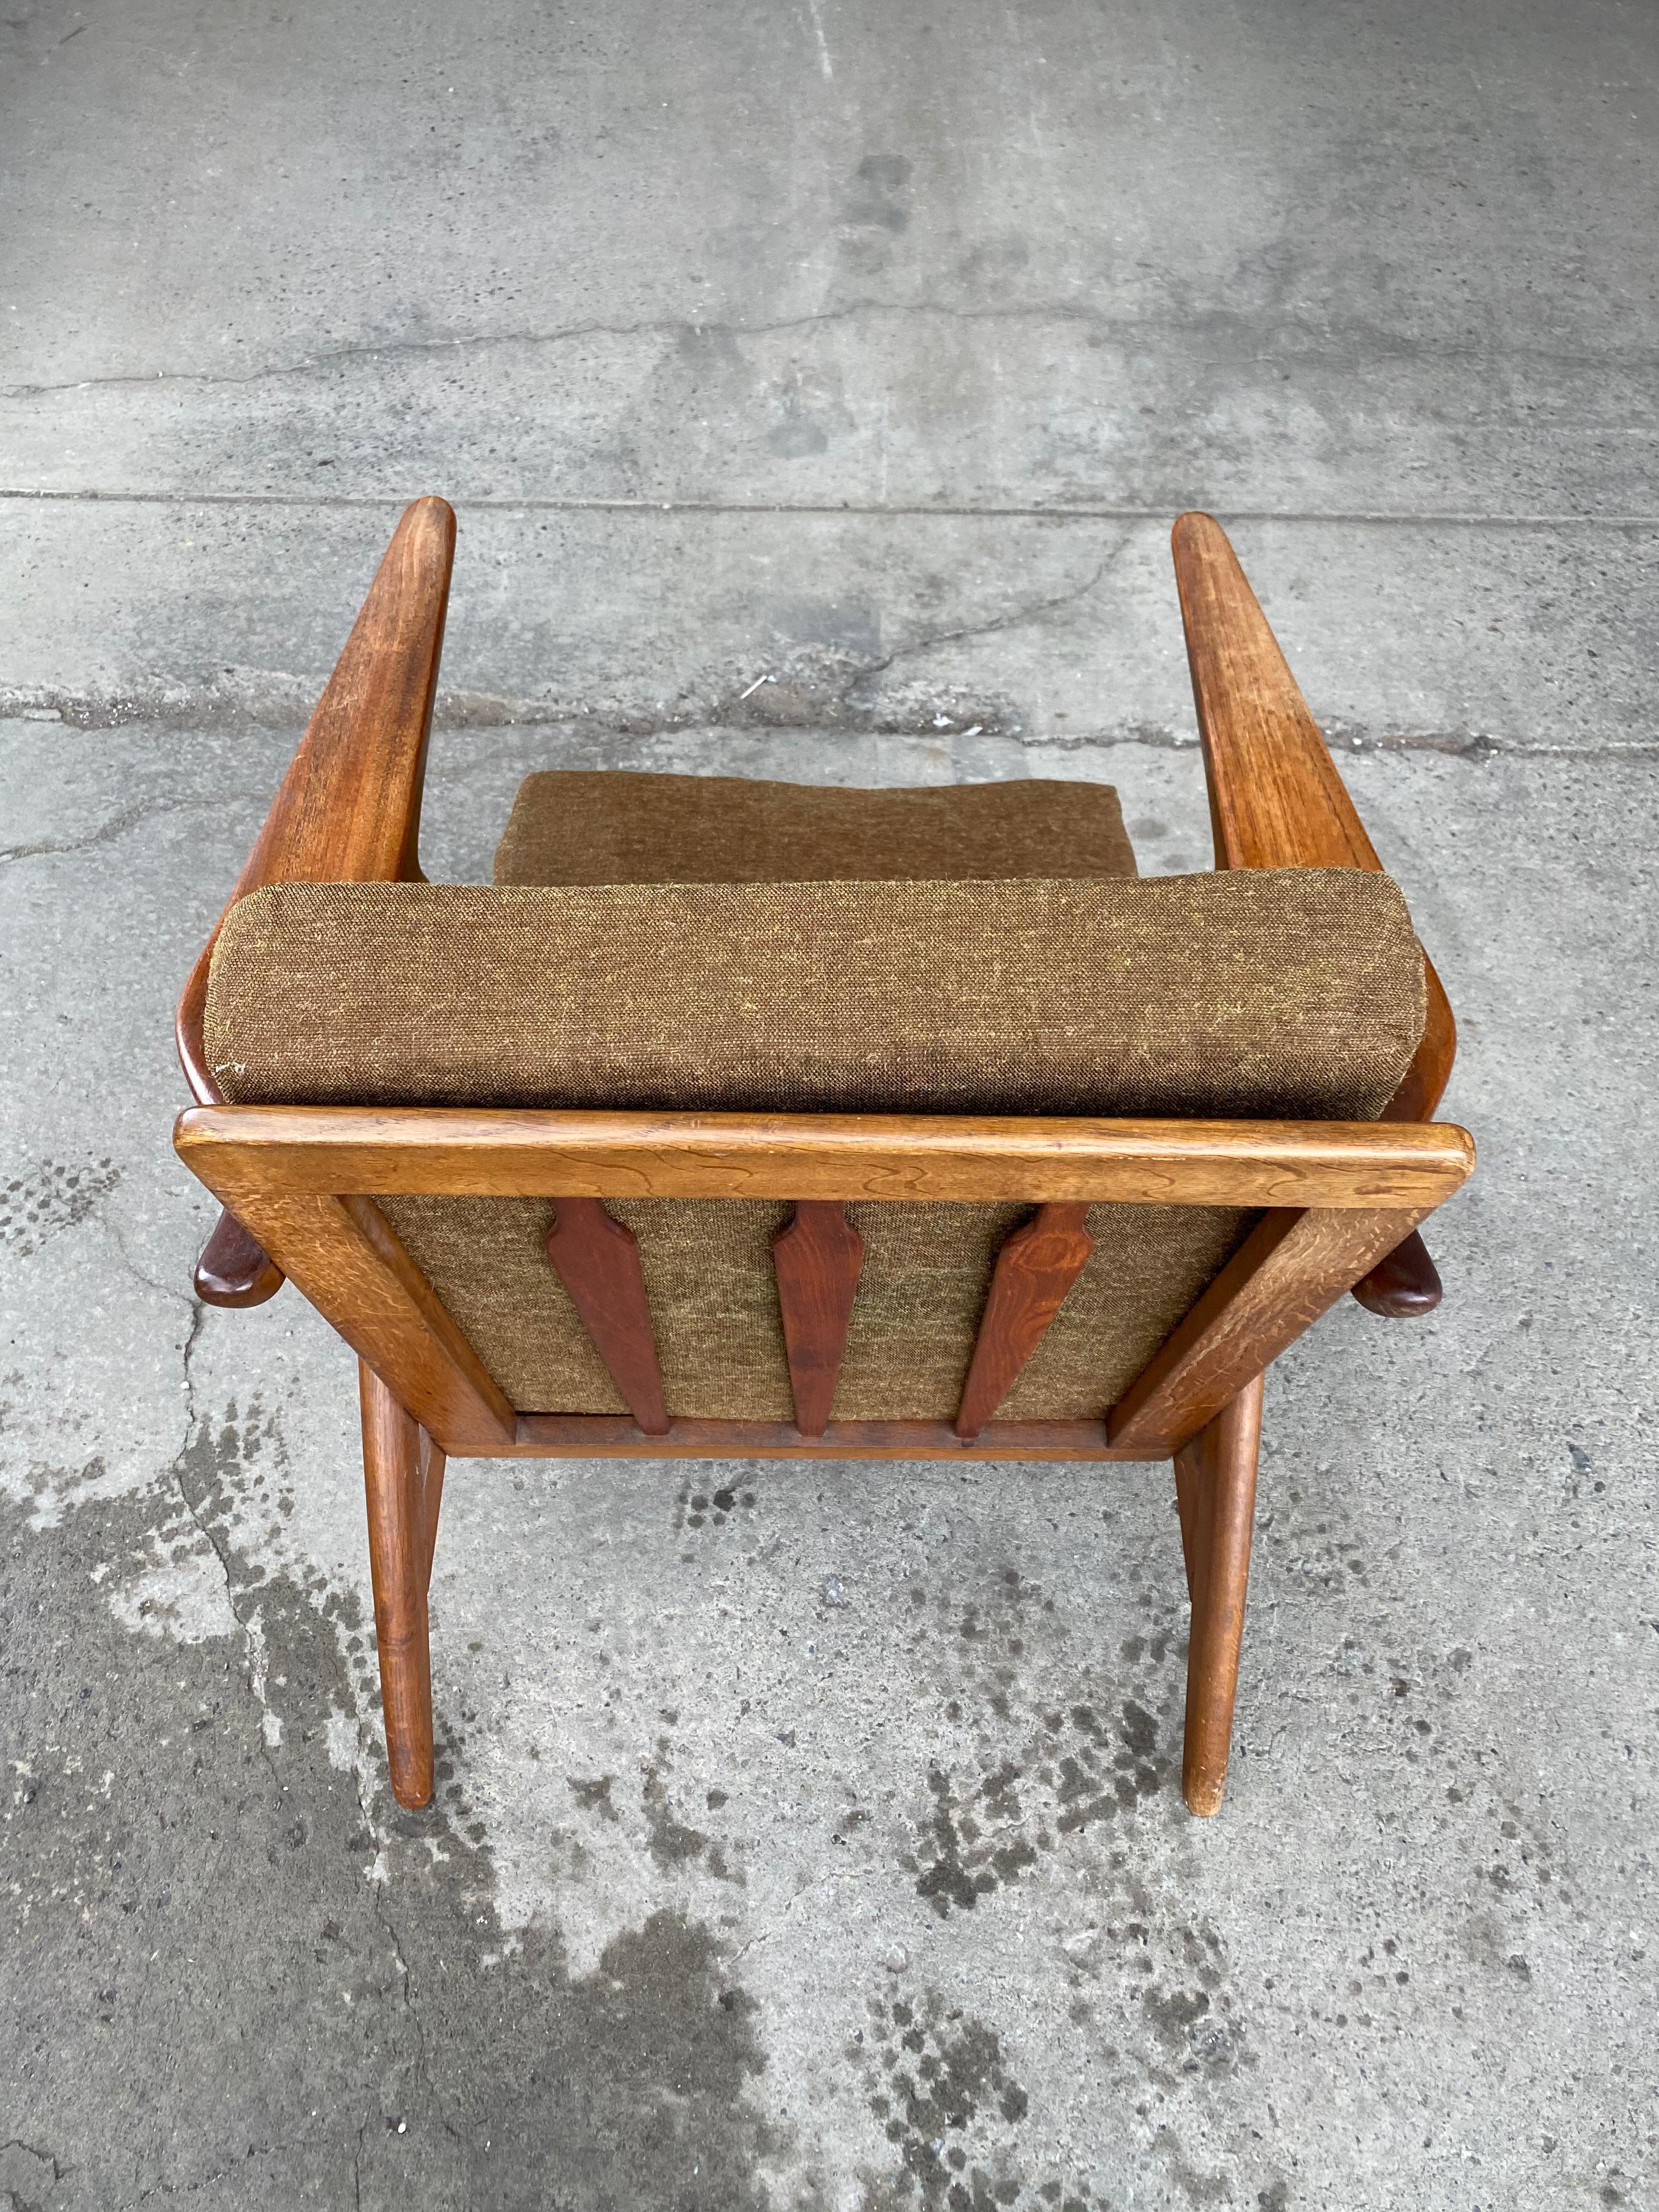 Rare paire de fauteuils modernes danois conçus par Arne Hovmand Olsen pour Mogens Kold, en état d'origine. La finition d'origine a été conservée, la patine montre juste ce qu'il faut d'usure cosmétique à la finition, de petites entailles et